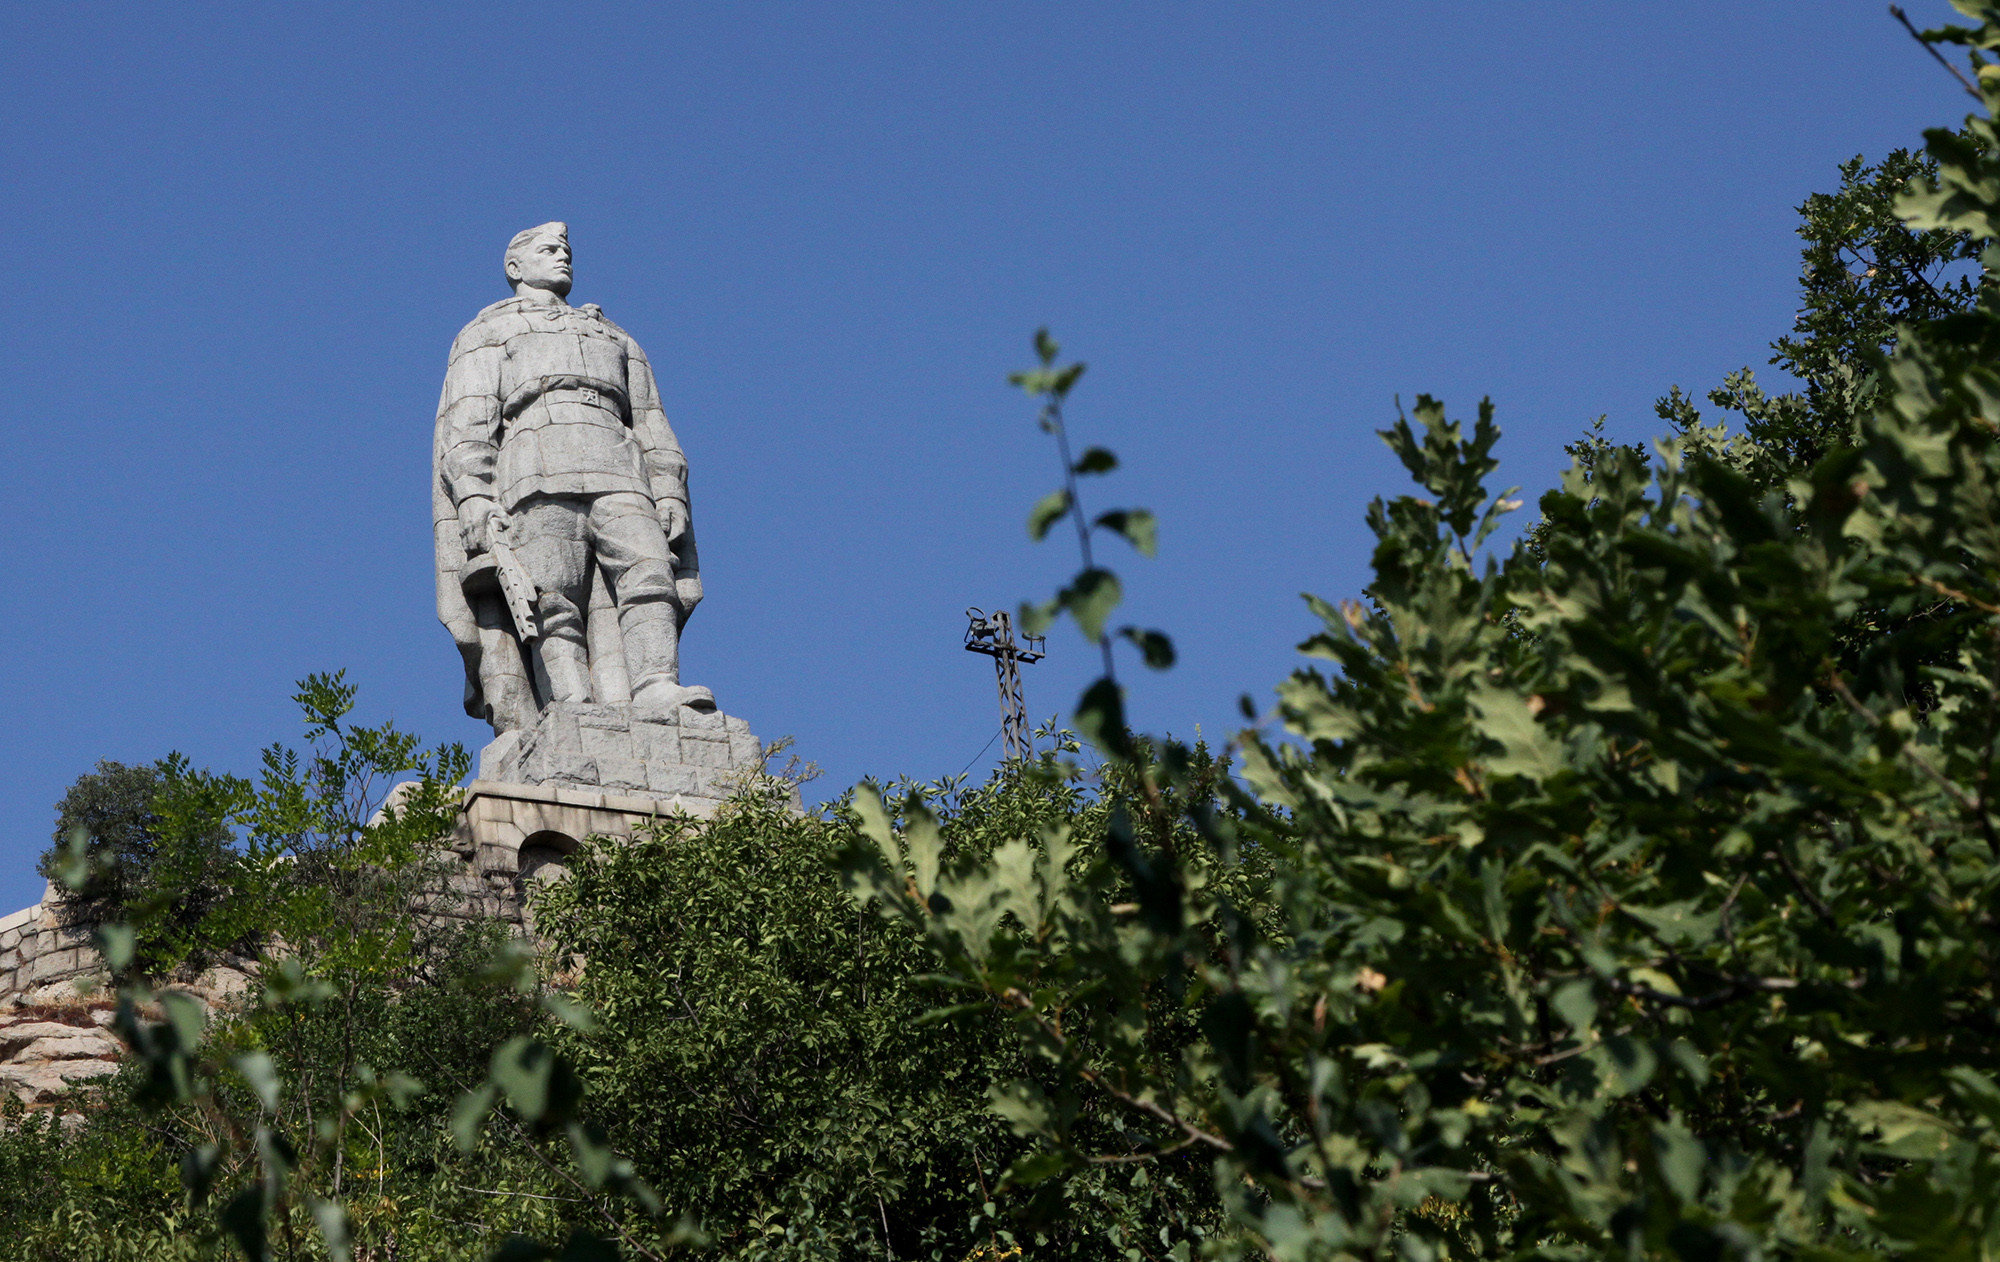 Памятник русскому солдату в болгарии алеша фото